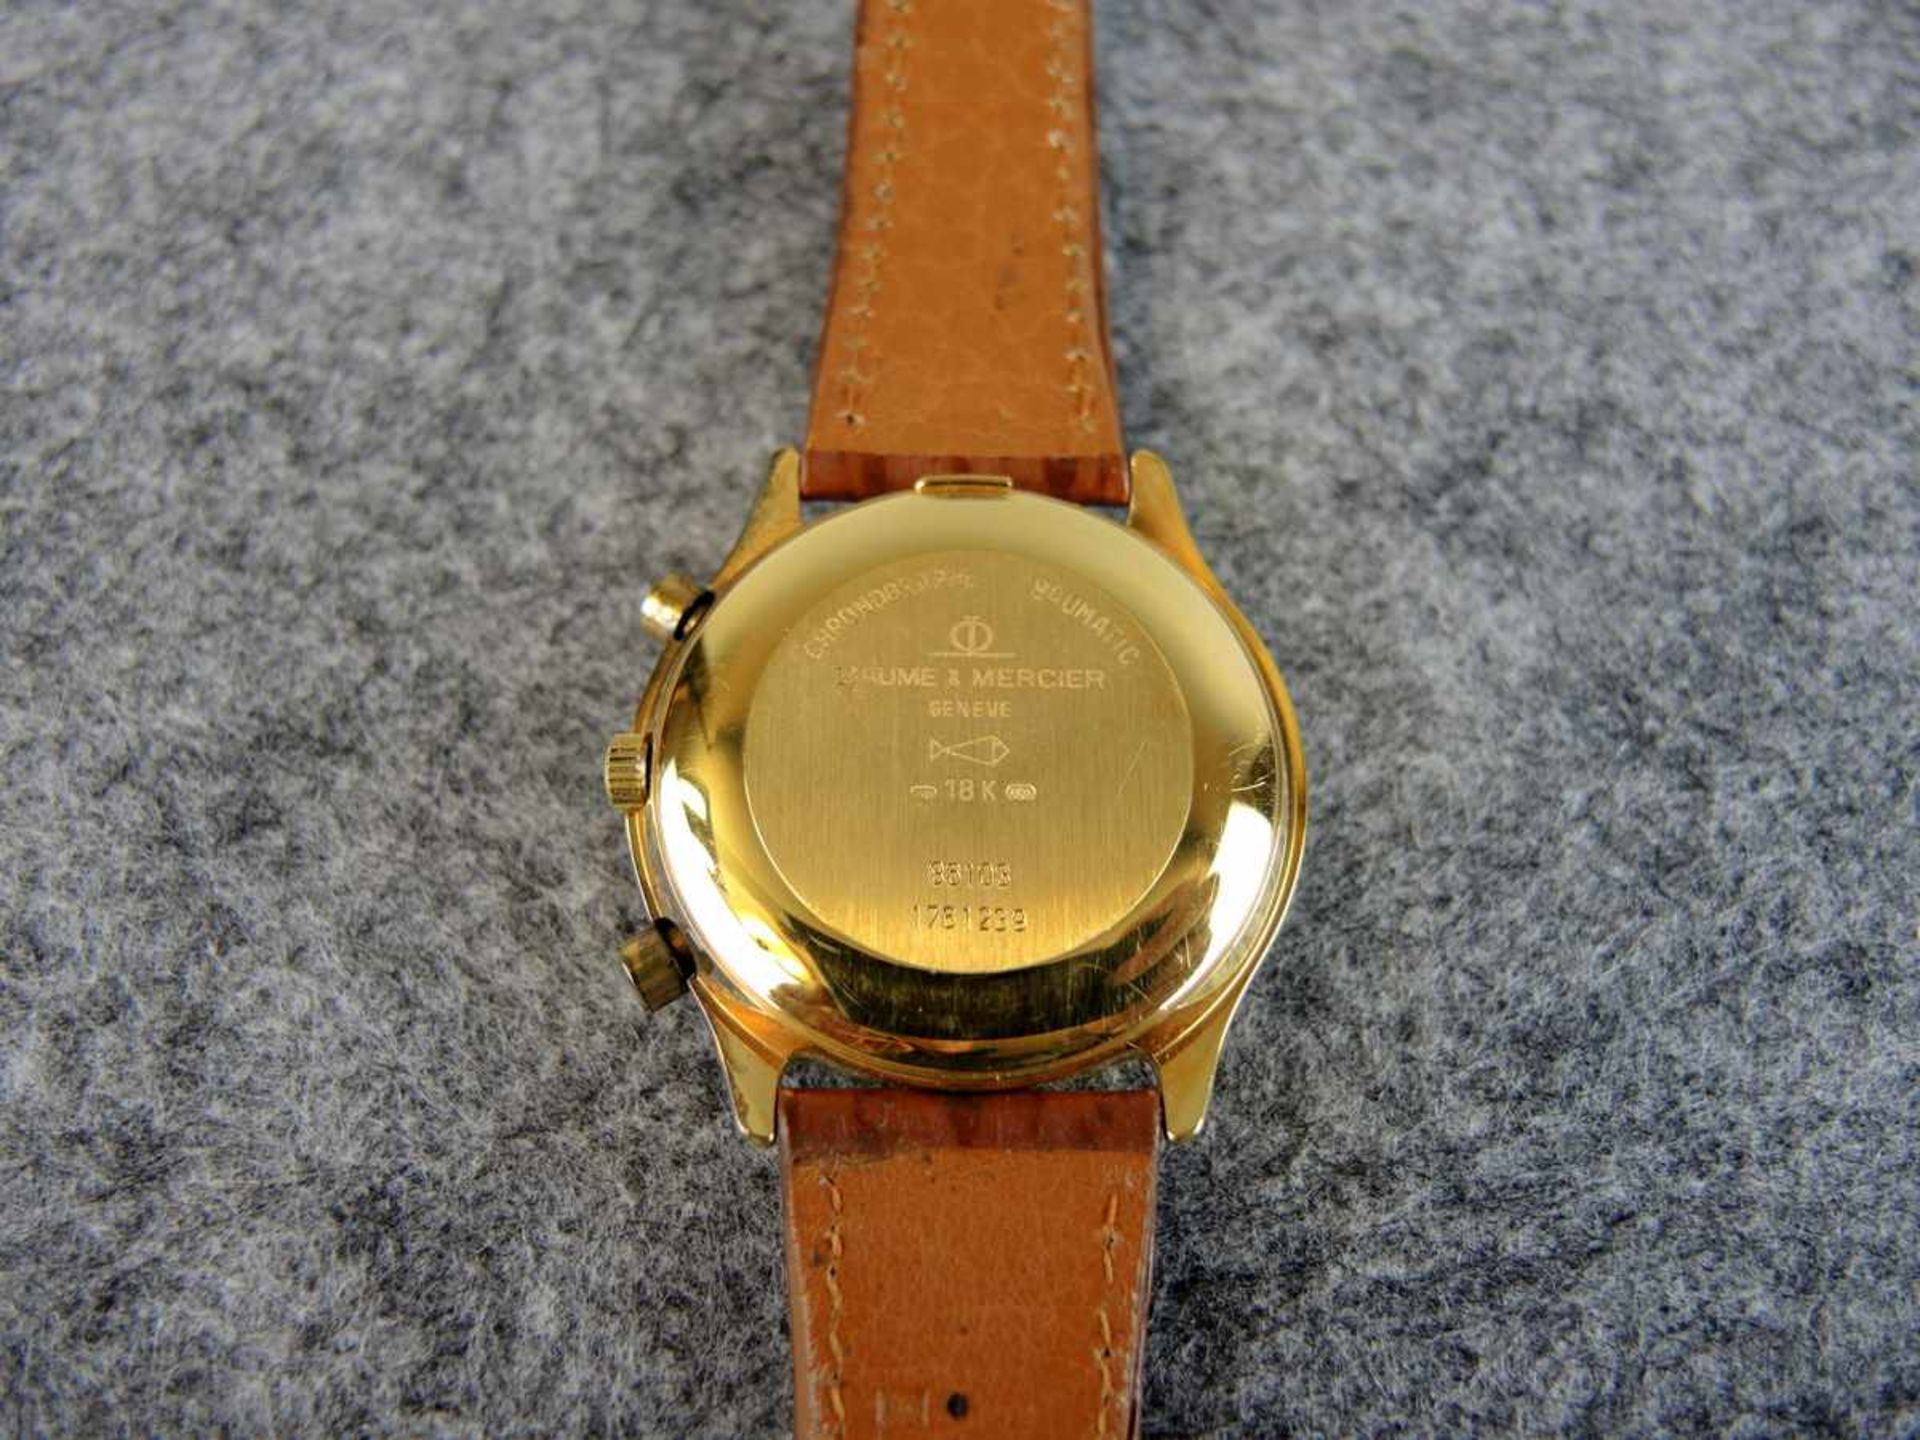 Baume Mercier Herrenarmbanduhr 18 K. Gold, Automatik, Chronograph. Box vorhanden, ohne Papiere. Ø - Bild 3 aus 3